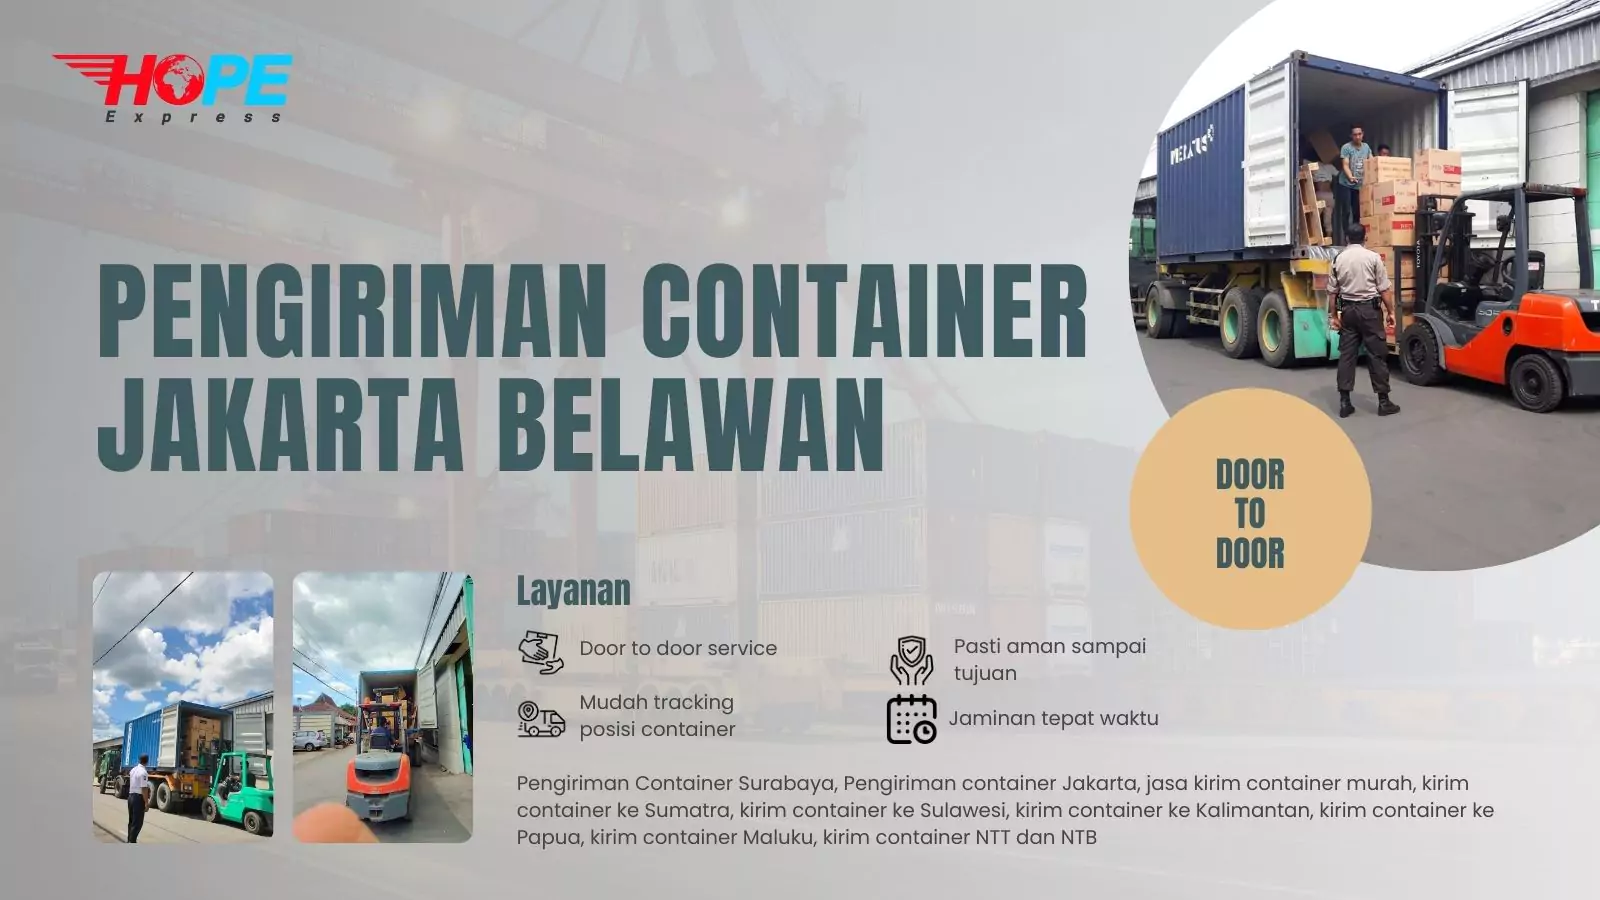 Pengiriman Container Jakarta Belawan